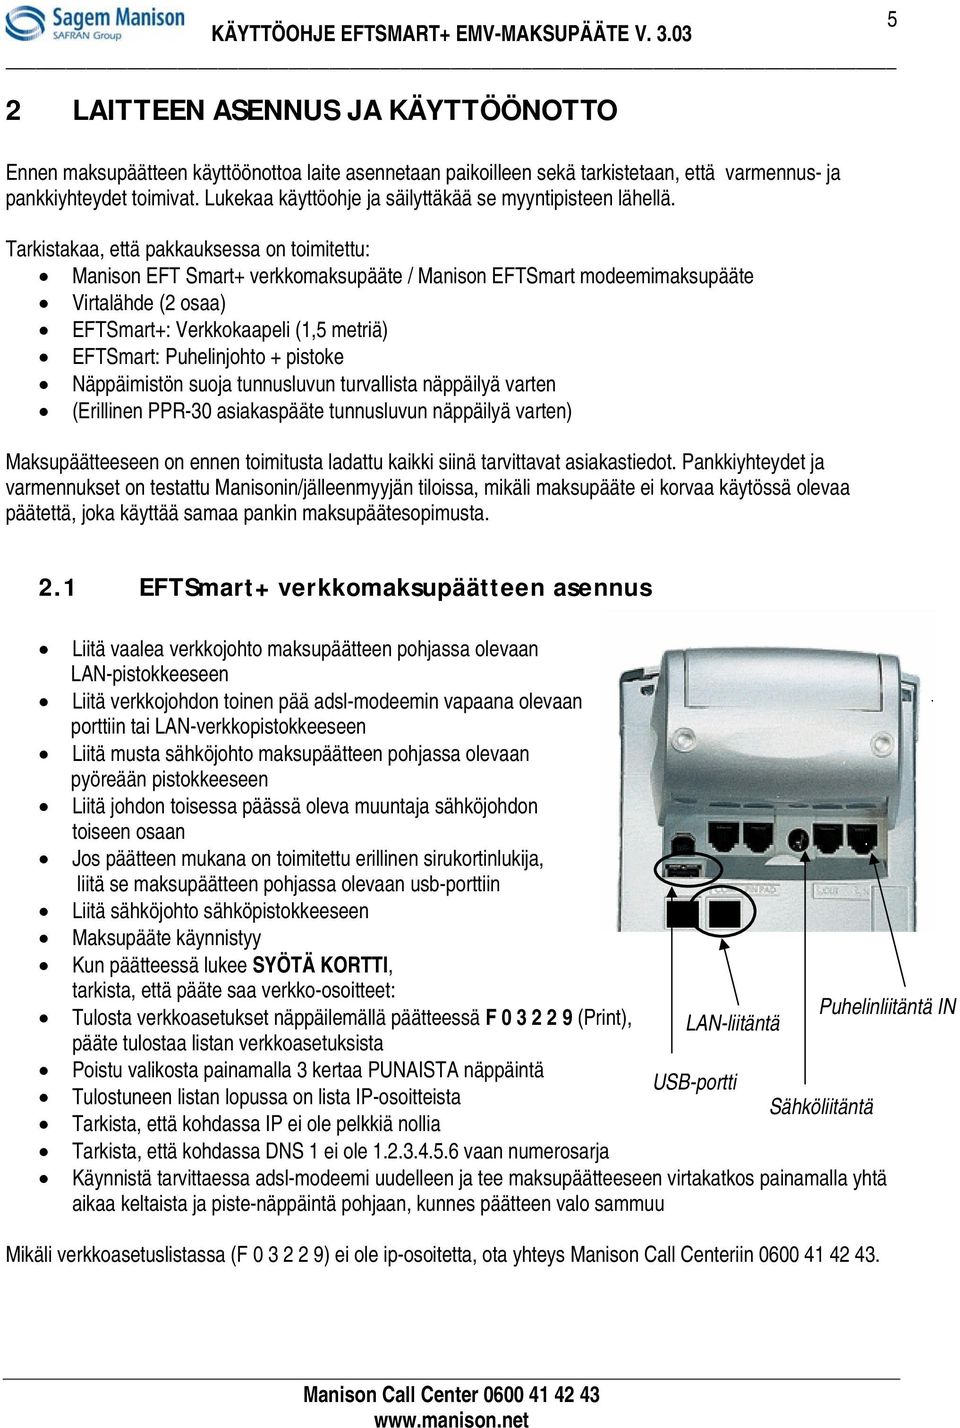 Tarkistakaa, että pakkauksessa on toimitettu: Manison EFT Smart+ verkkomaksupääte / Manison EFTSmart modeemimaksupääte Virtalähde (2 osaa) EFTSmart+: Verkkokaapeli (1,5 metriä) EFTSmart: Puhelinjohto